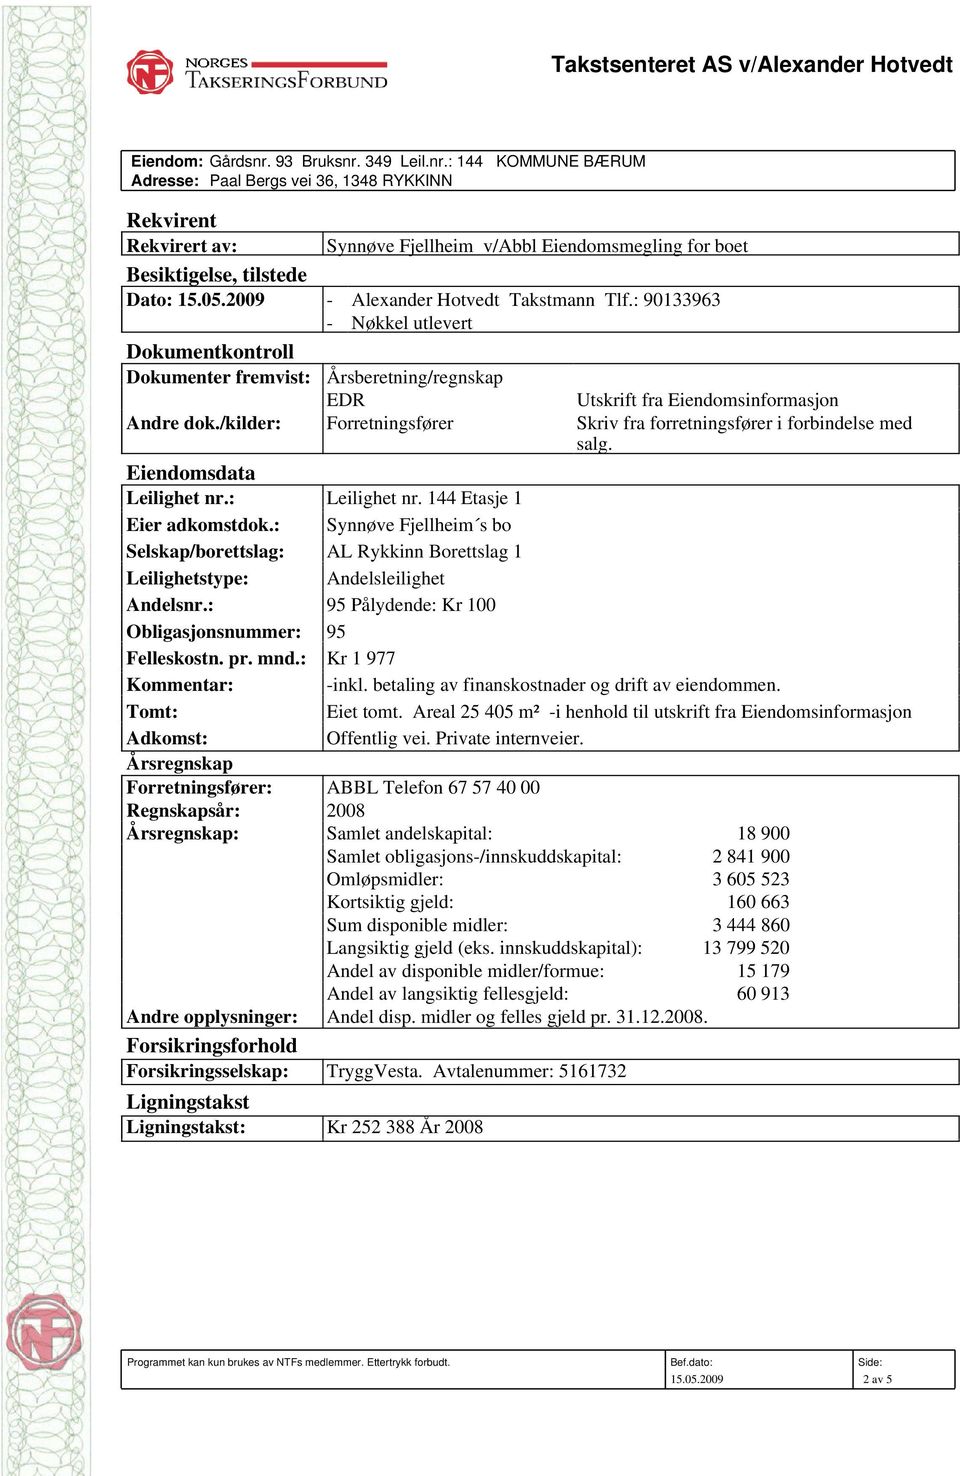 2009 - Alexander Hotvedt Takstmann Tlf.: 90133963 - Nøkkel utlevert Dokumentkontroll Dokumenter fremvist: Årsberetning/regnskap EDR Utskrift fra Eiendomsinformasjon Andre dok.